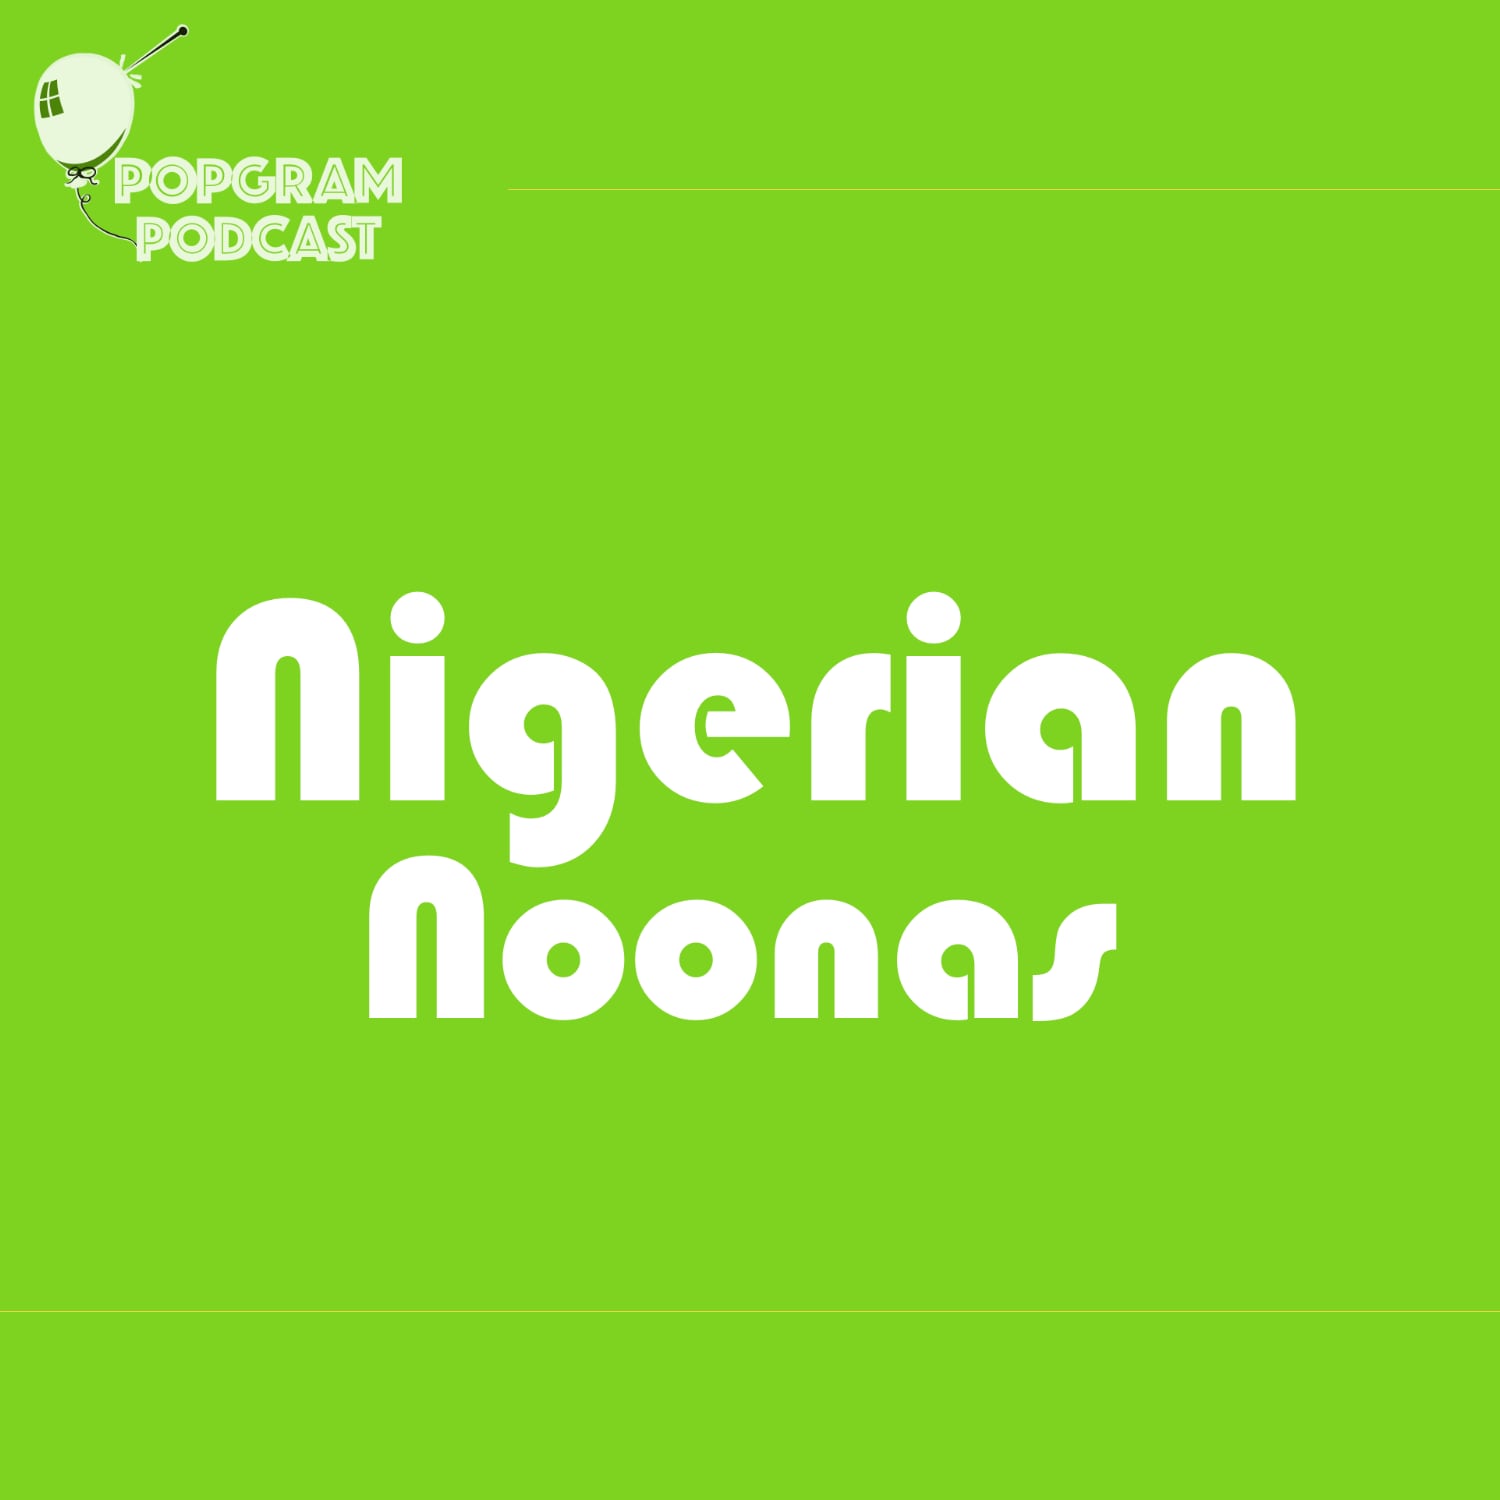 Show artwork for Nigerian Noonas